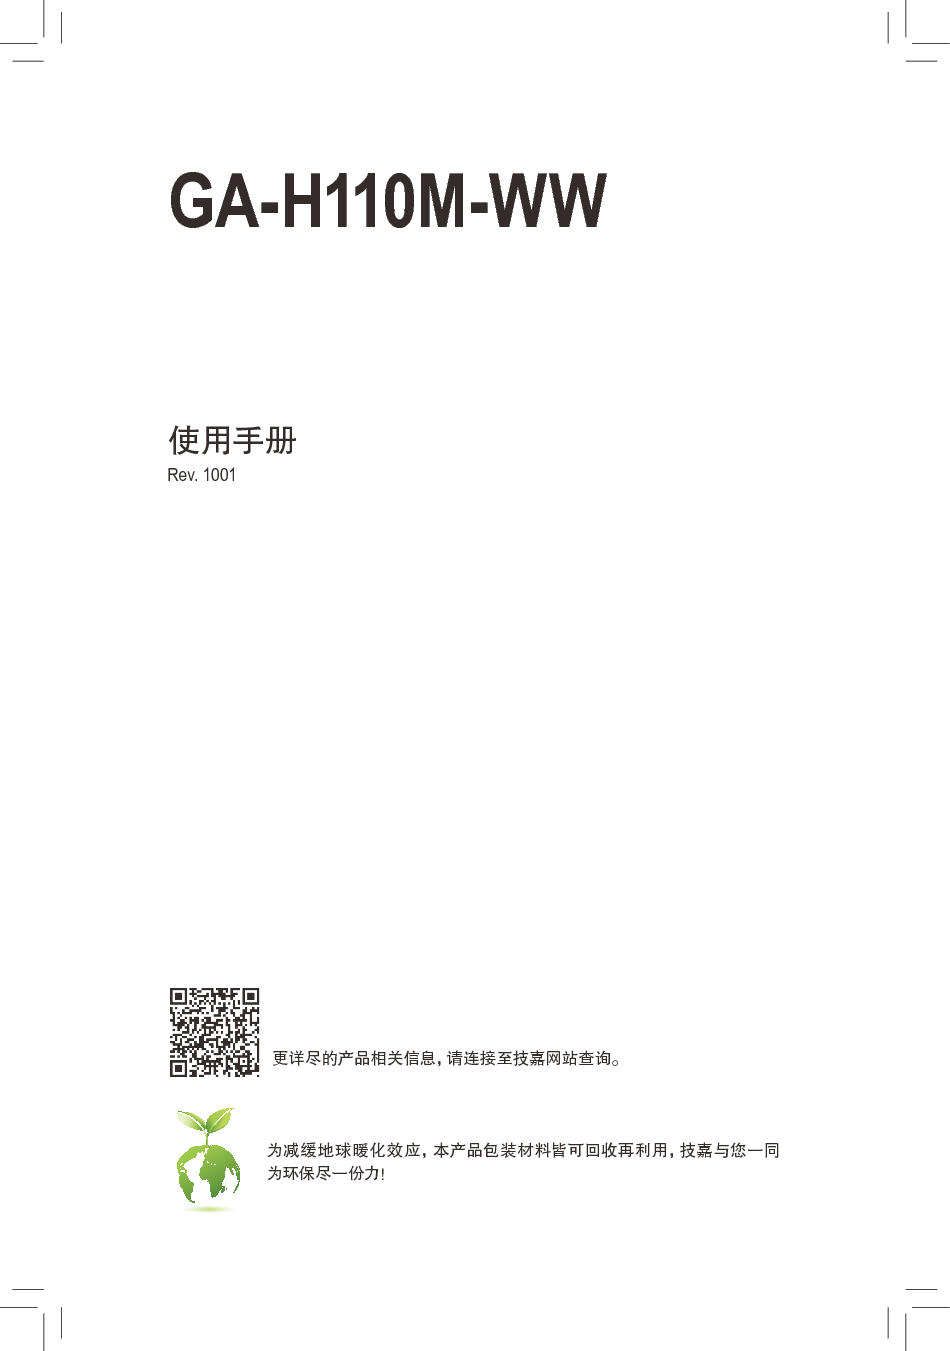 技嘉 Gigabyte GA-H110M-WW 使用手册 封面